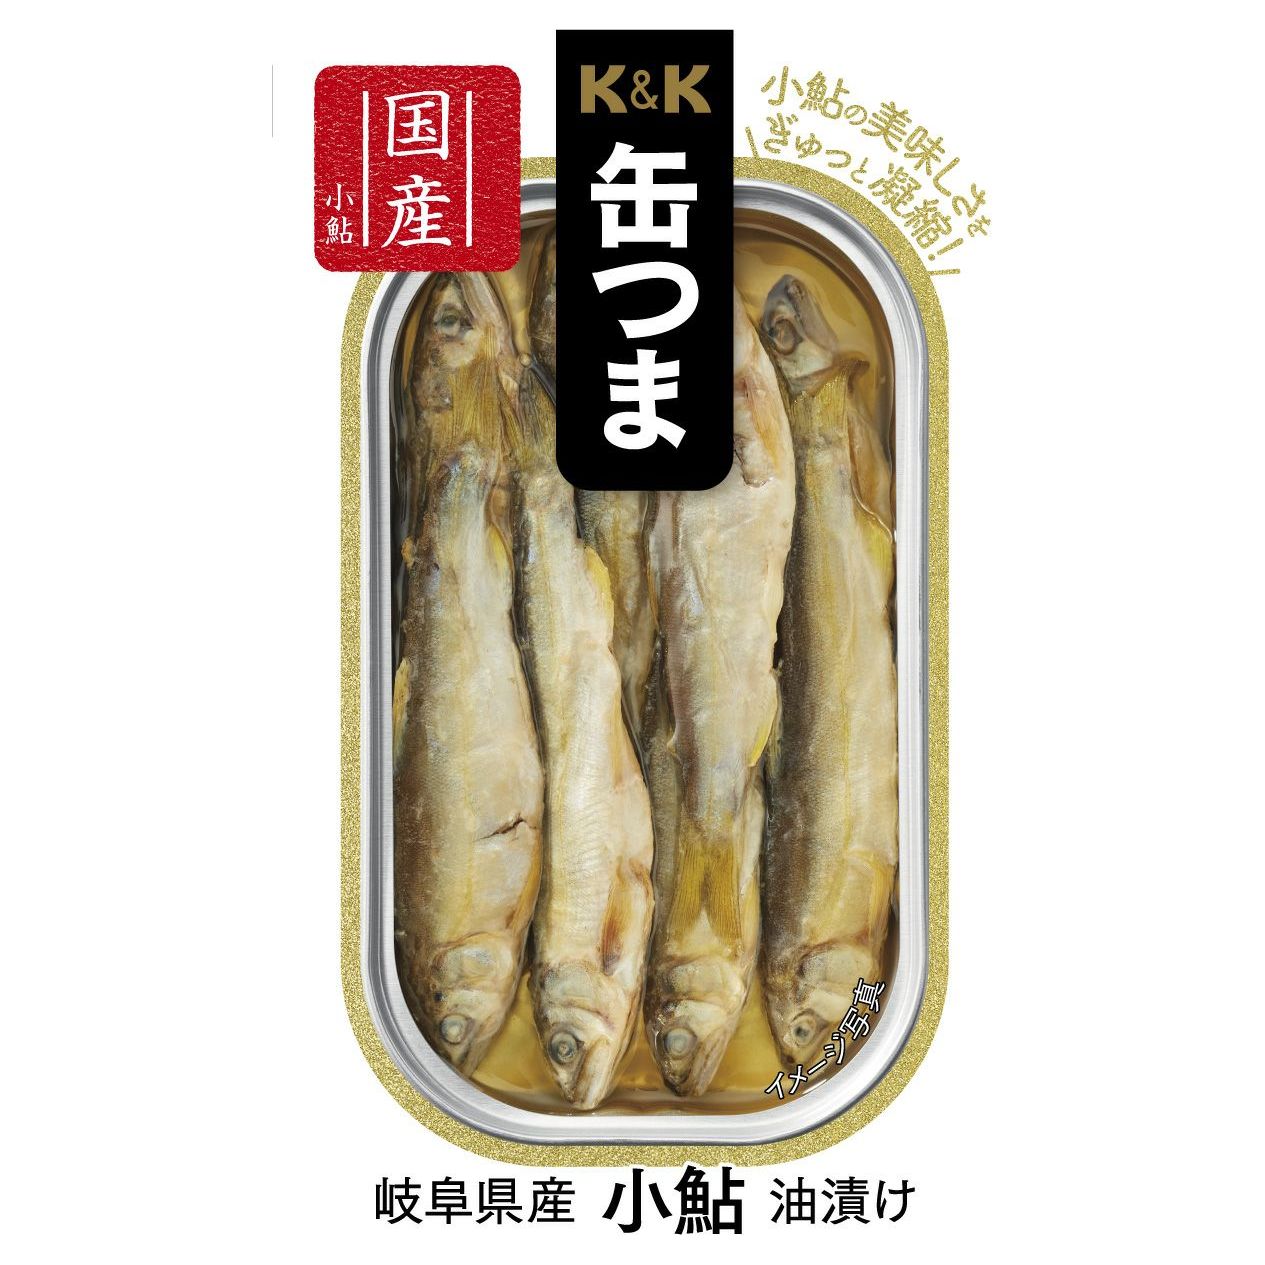 K&K CAN Tsuna Gifu en vinagre en aceite de Koju de la prefectura de Gifu